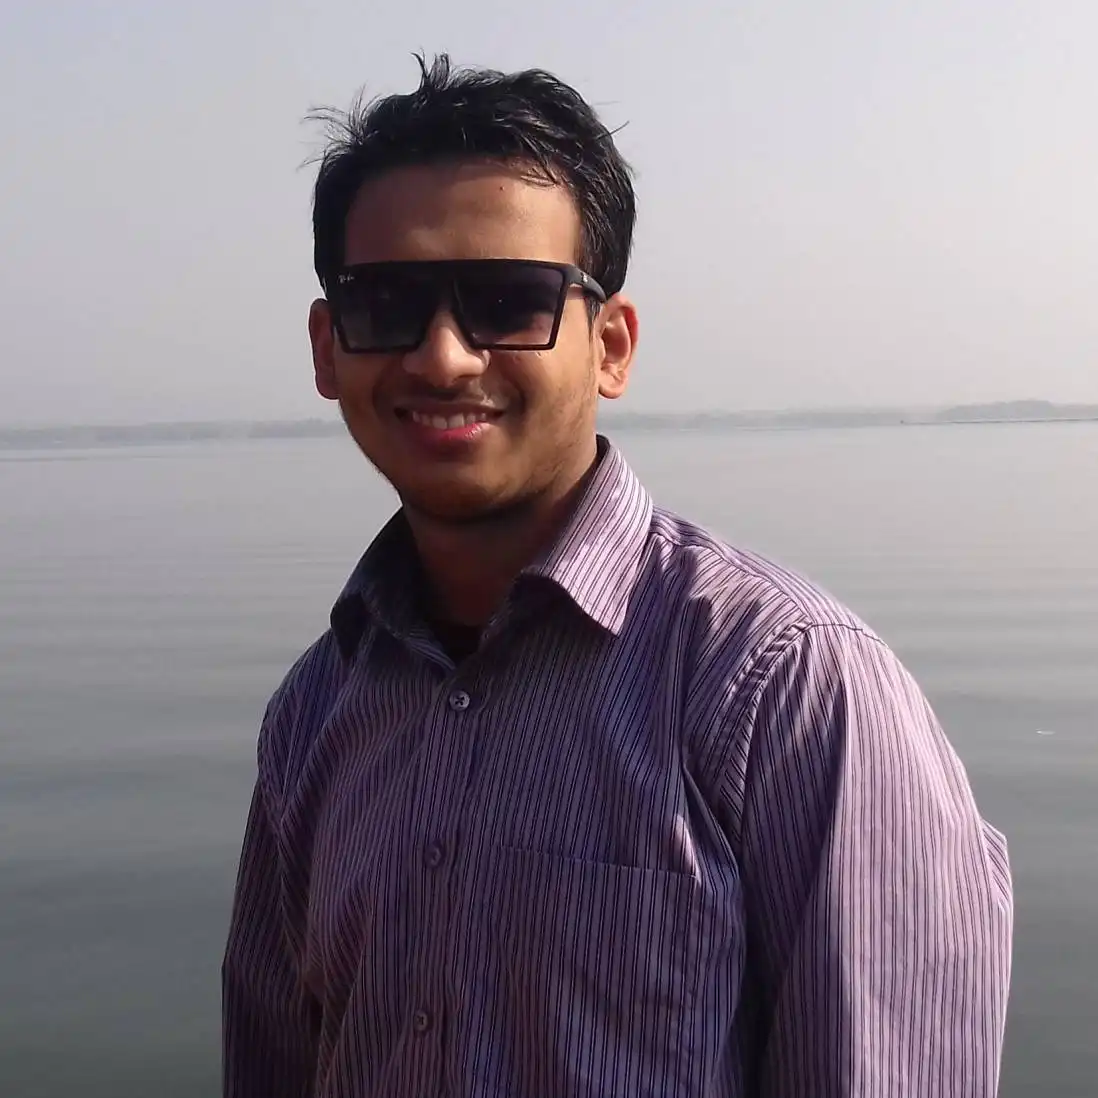 omar_sharif profile image